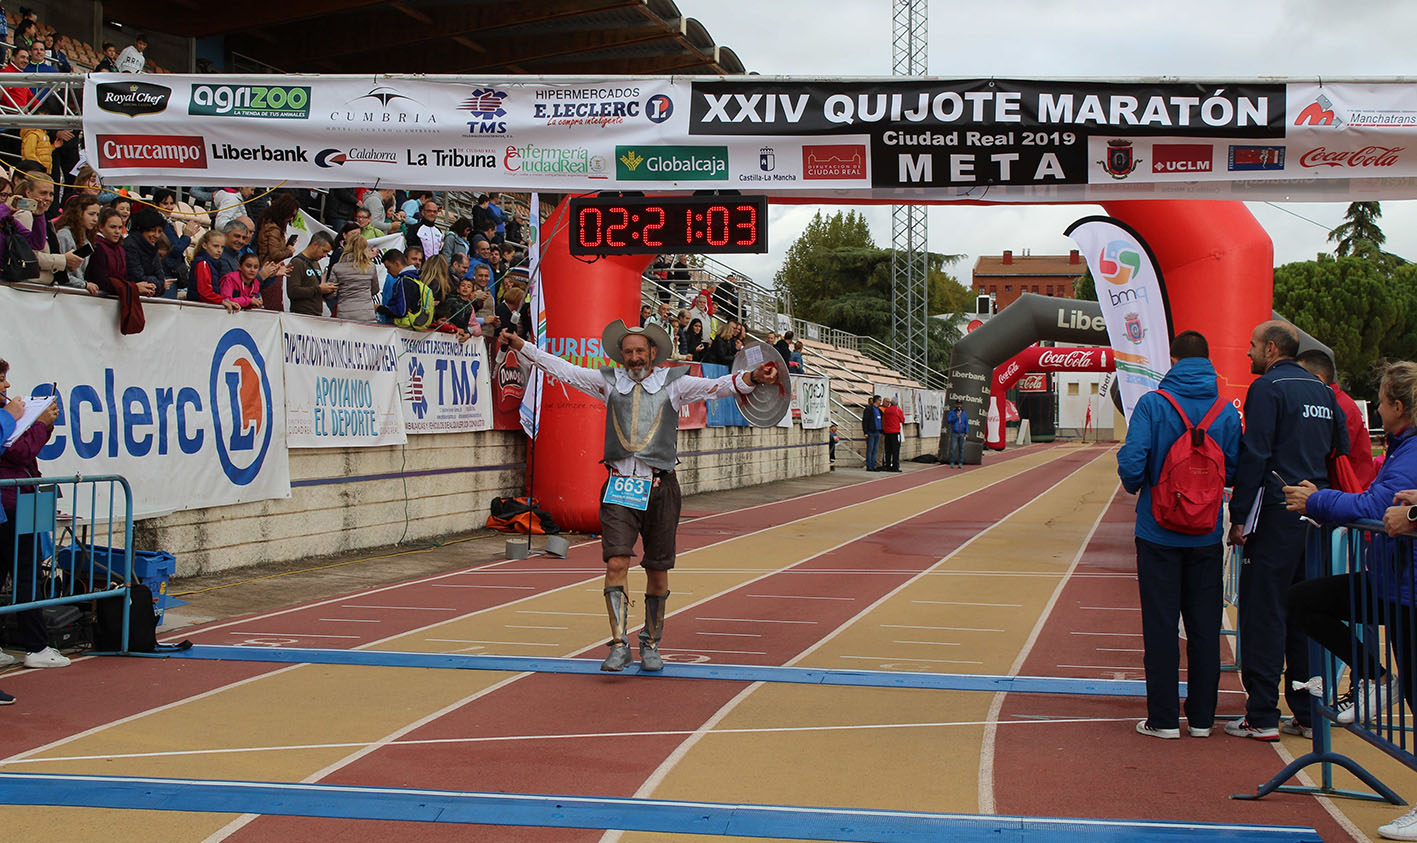 El Quijote Maratón, que se iba a celebrar el próximo 18 de octubre, tendrá que esperar a 2021.